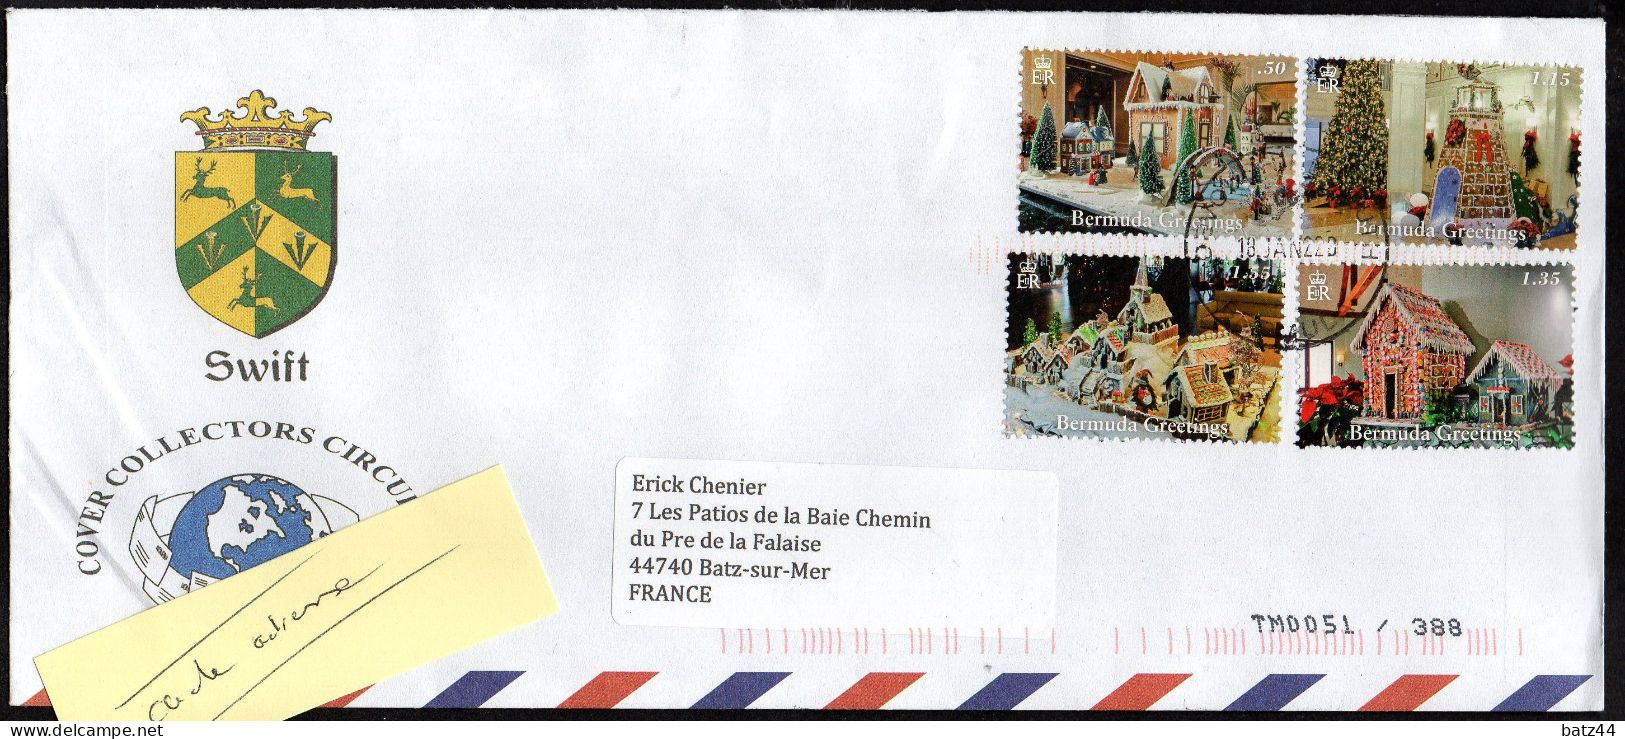 BERMUDES BERMUDA  Enveloppe Cover 4 Stamps Bermuda Greetings - Bermudas